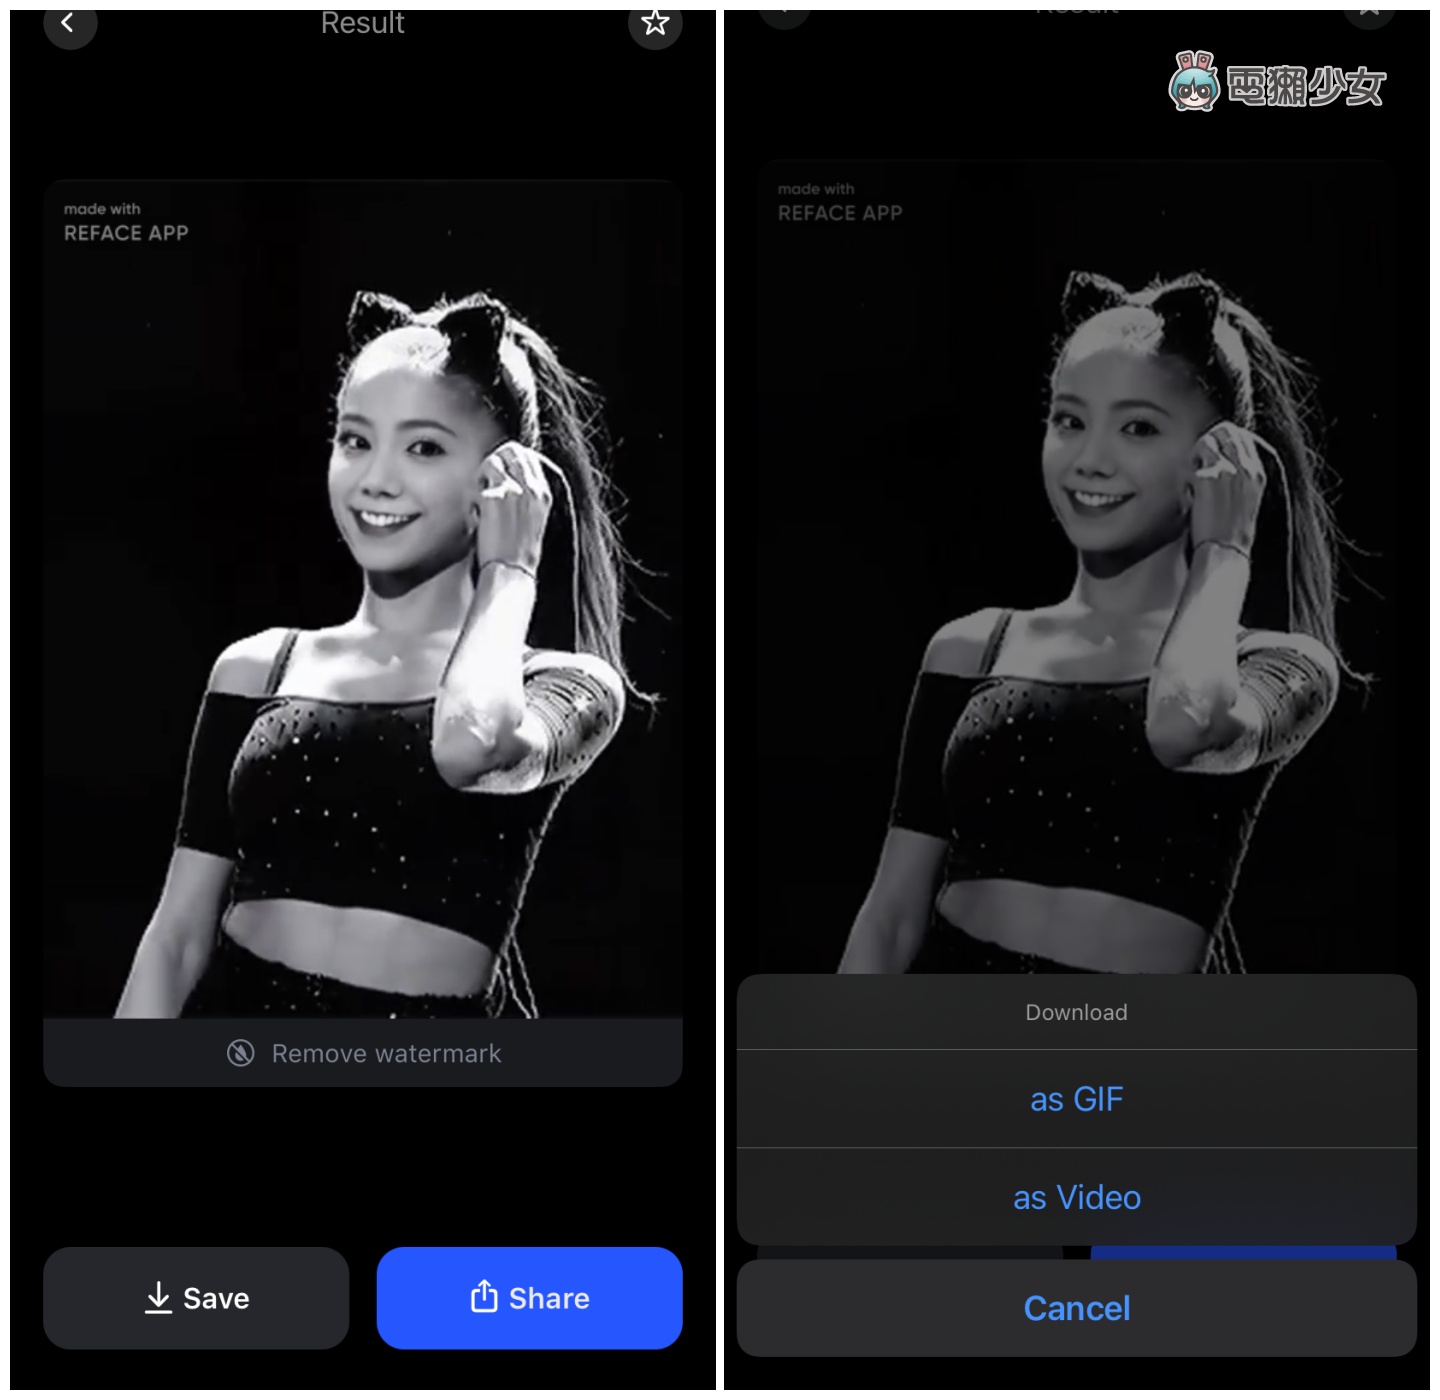 免費『 REFACE 』App 幫你 AI 換臉！看看自己變成明星是什麼樣子！